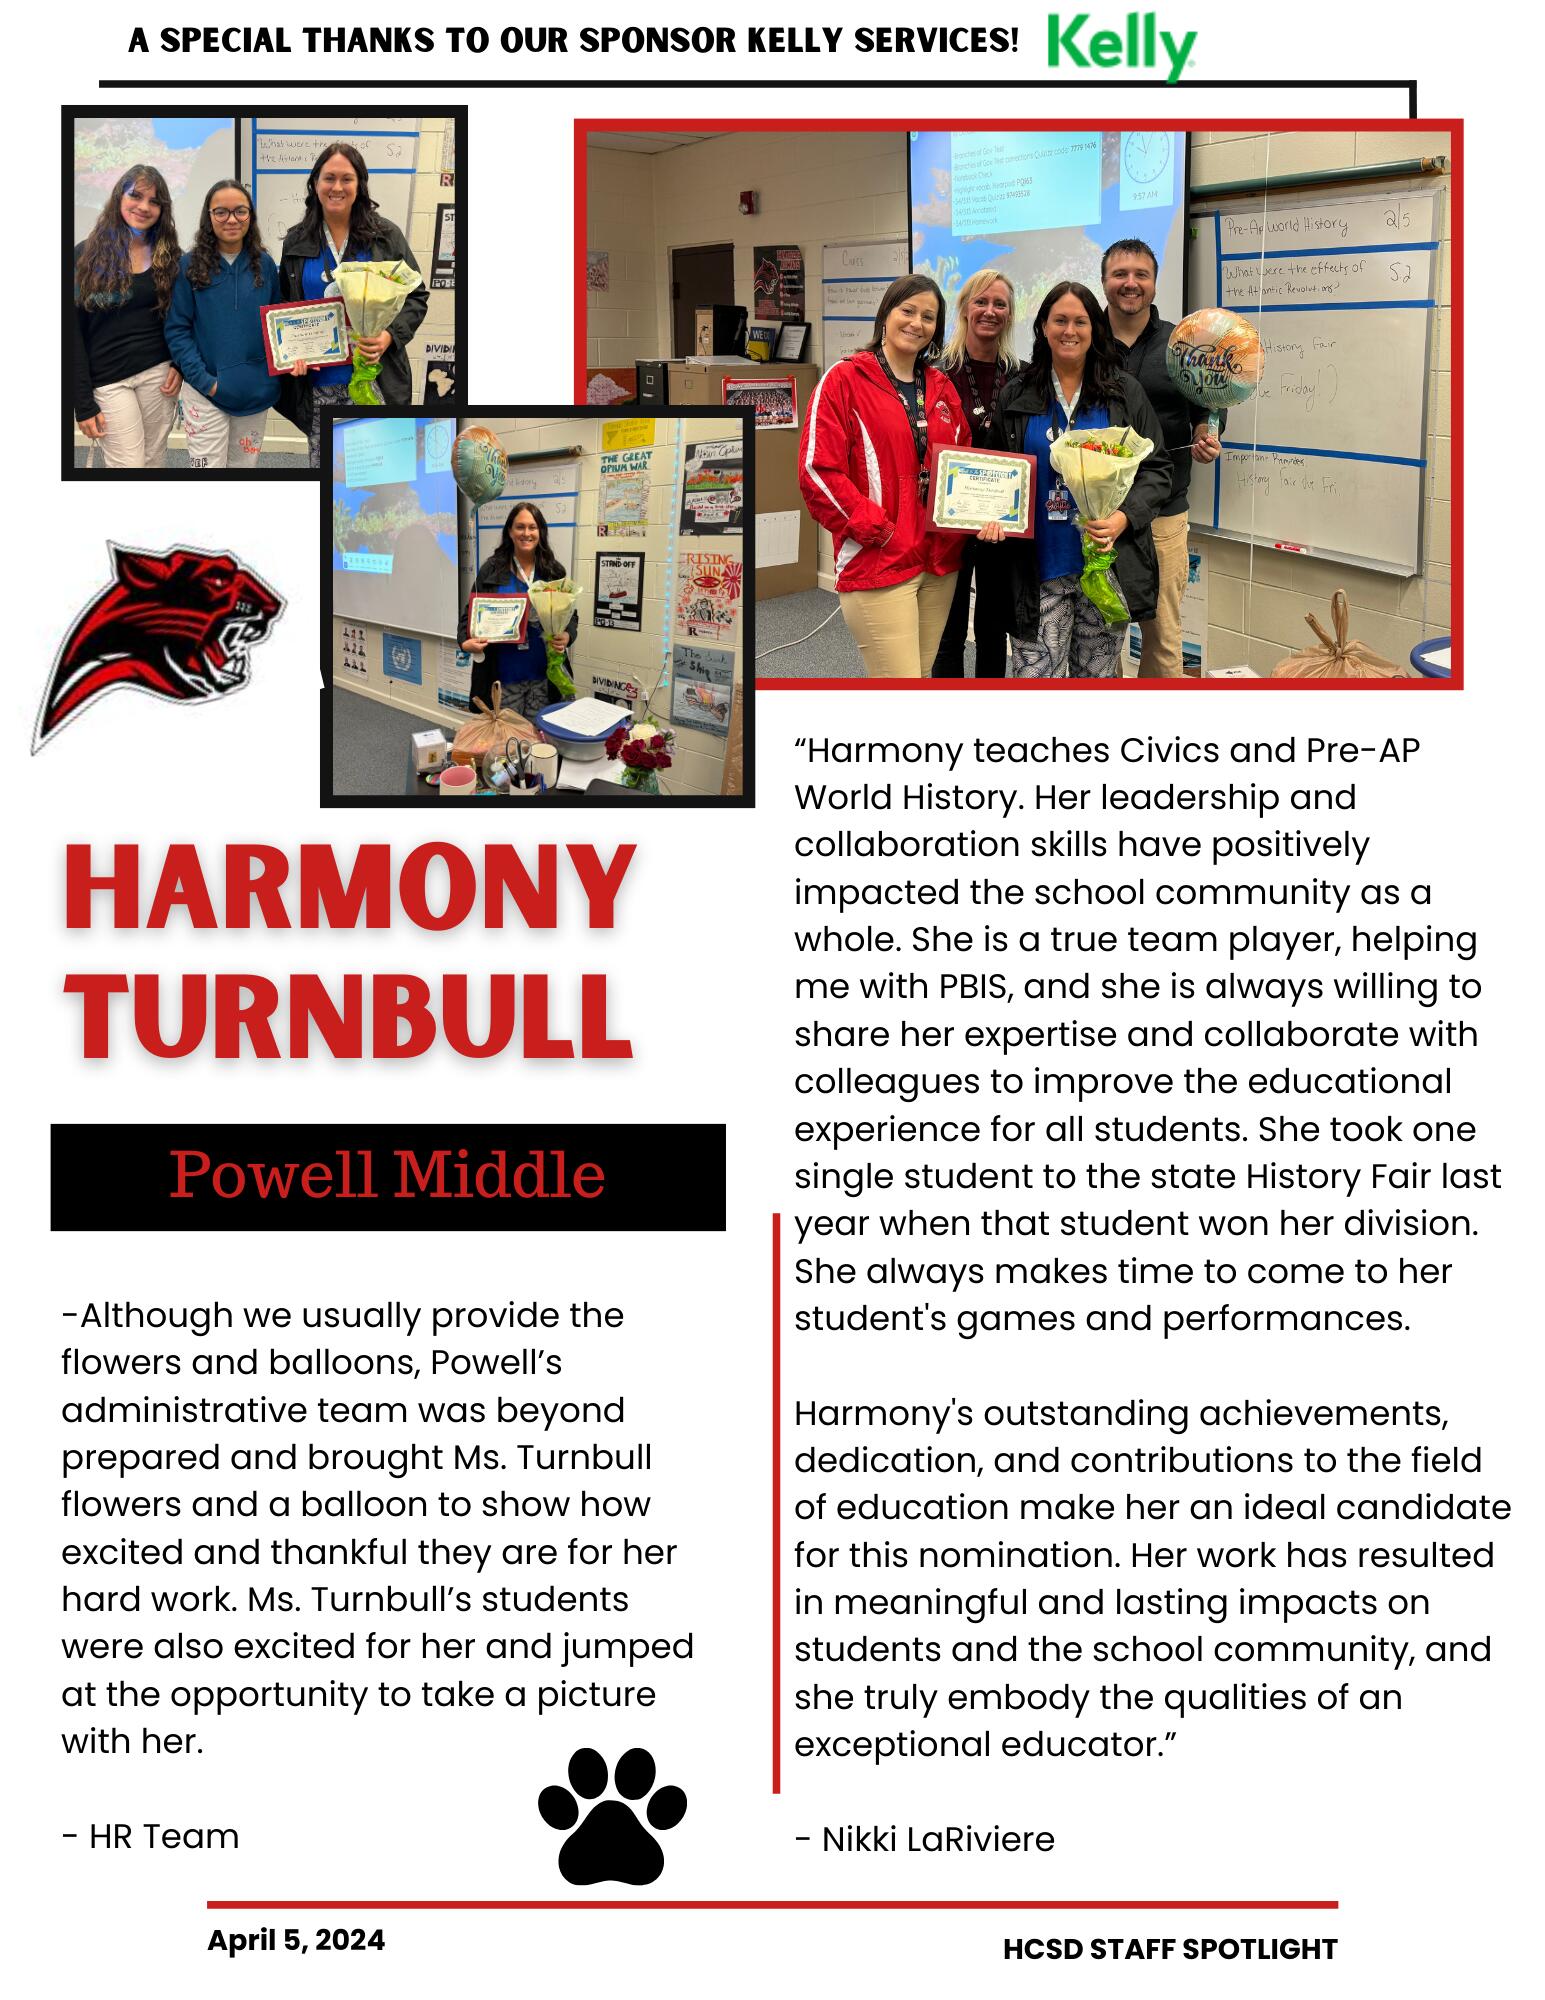 Staff Spotlight on Harmony Turnbull